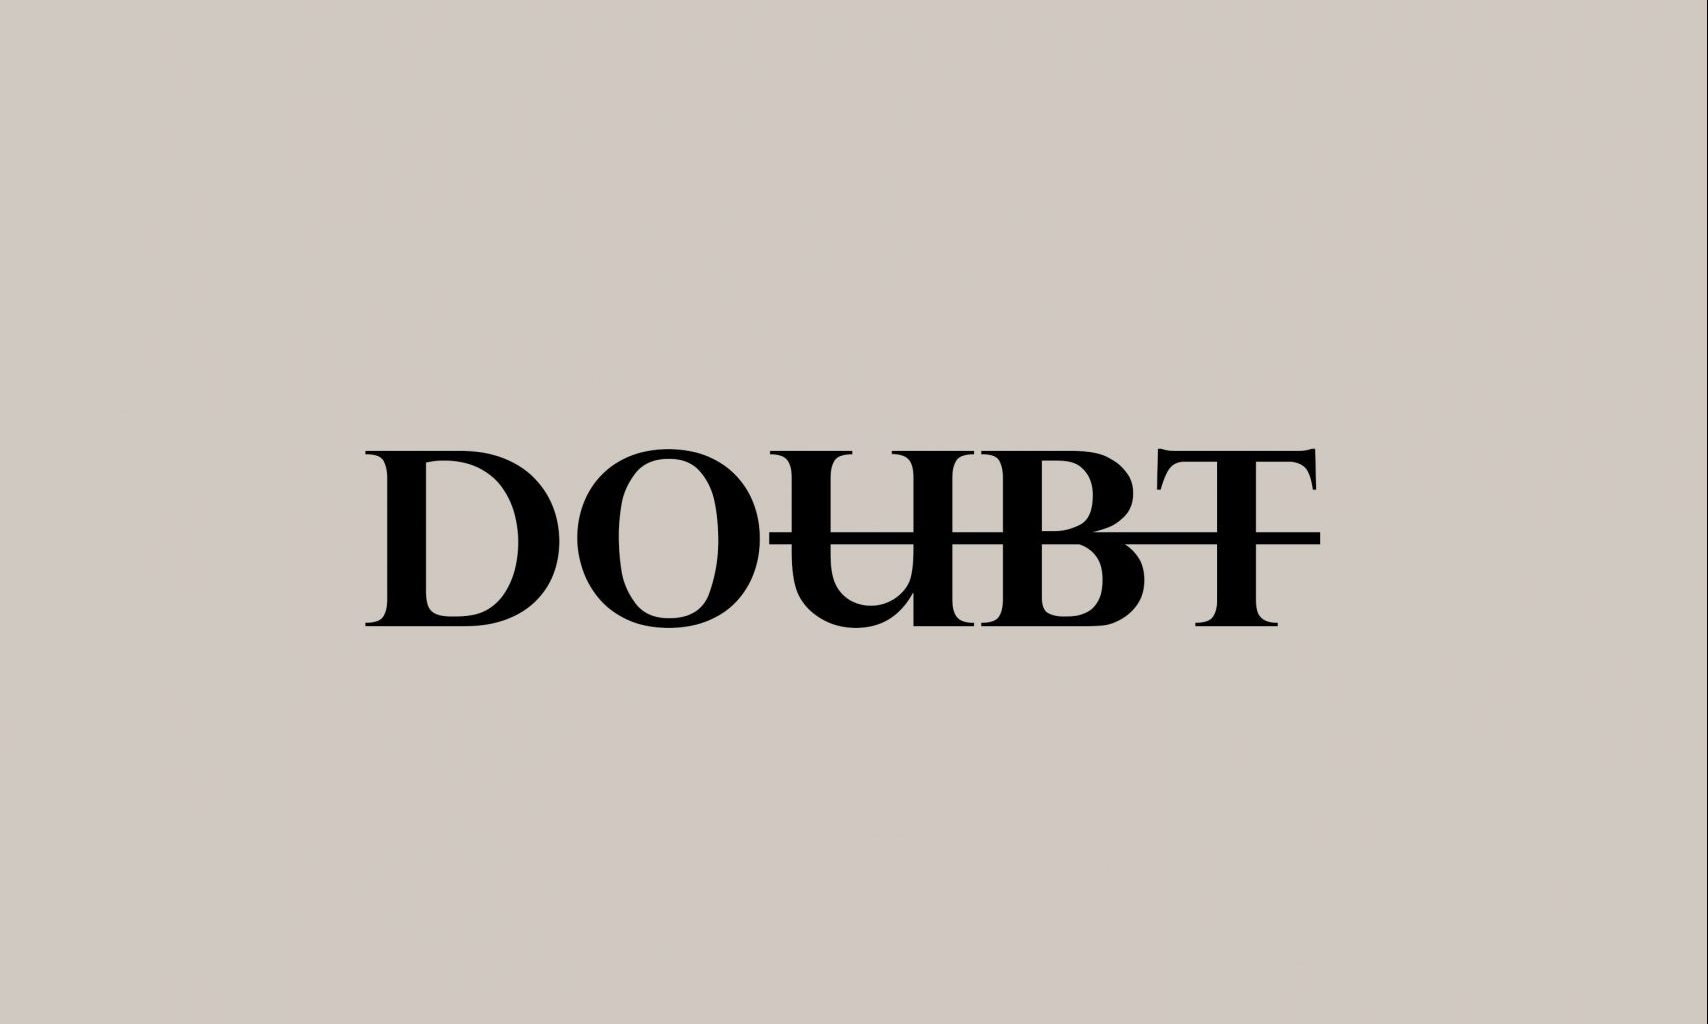 motivational-simple-inscription-against-doubts